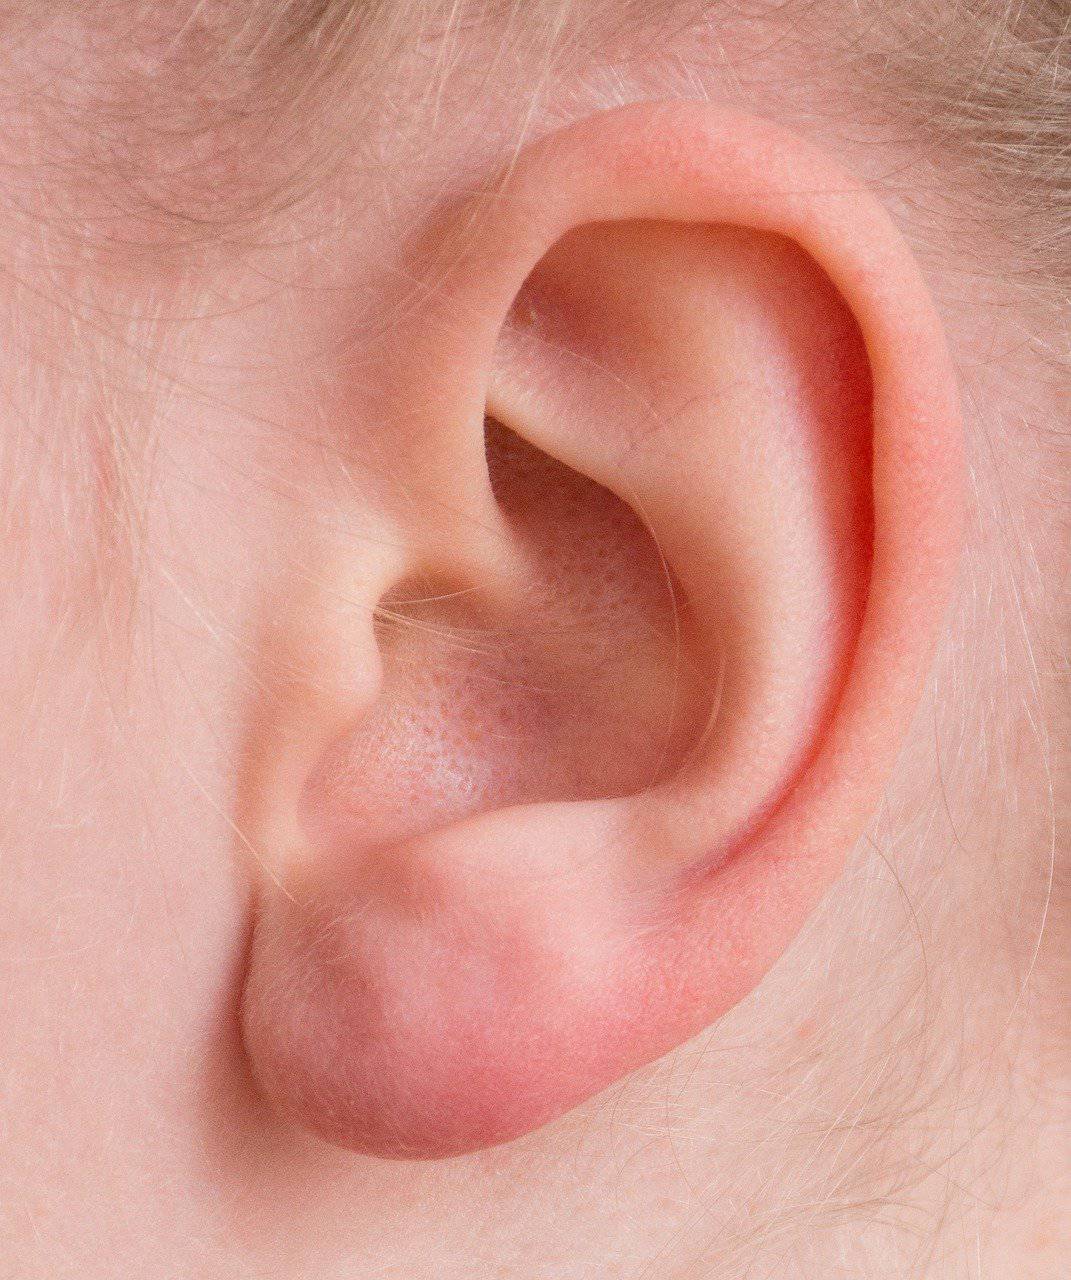 Ohrstöpsel richtig einsetzen: So nutzen Sie Gehörschutzstöpsel